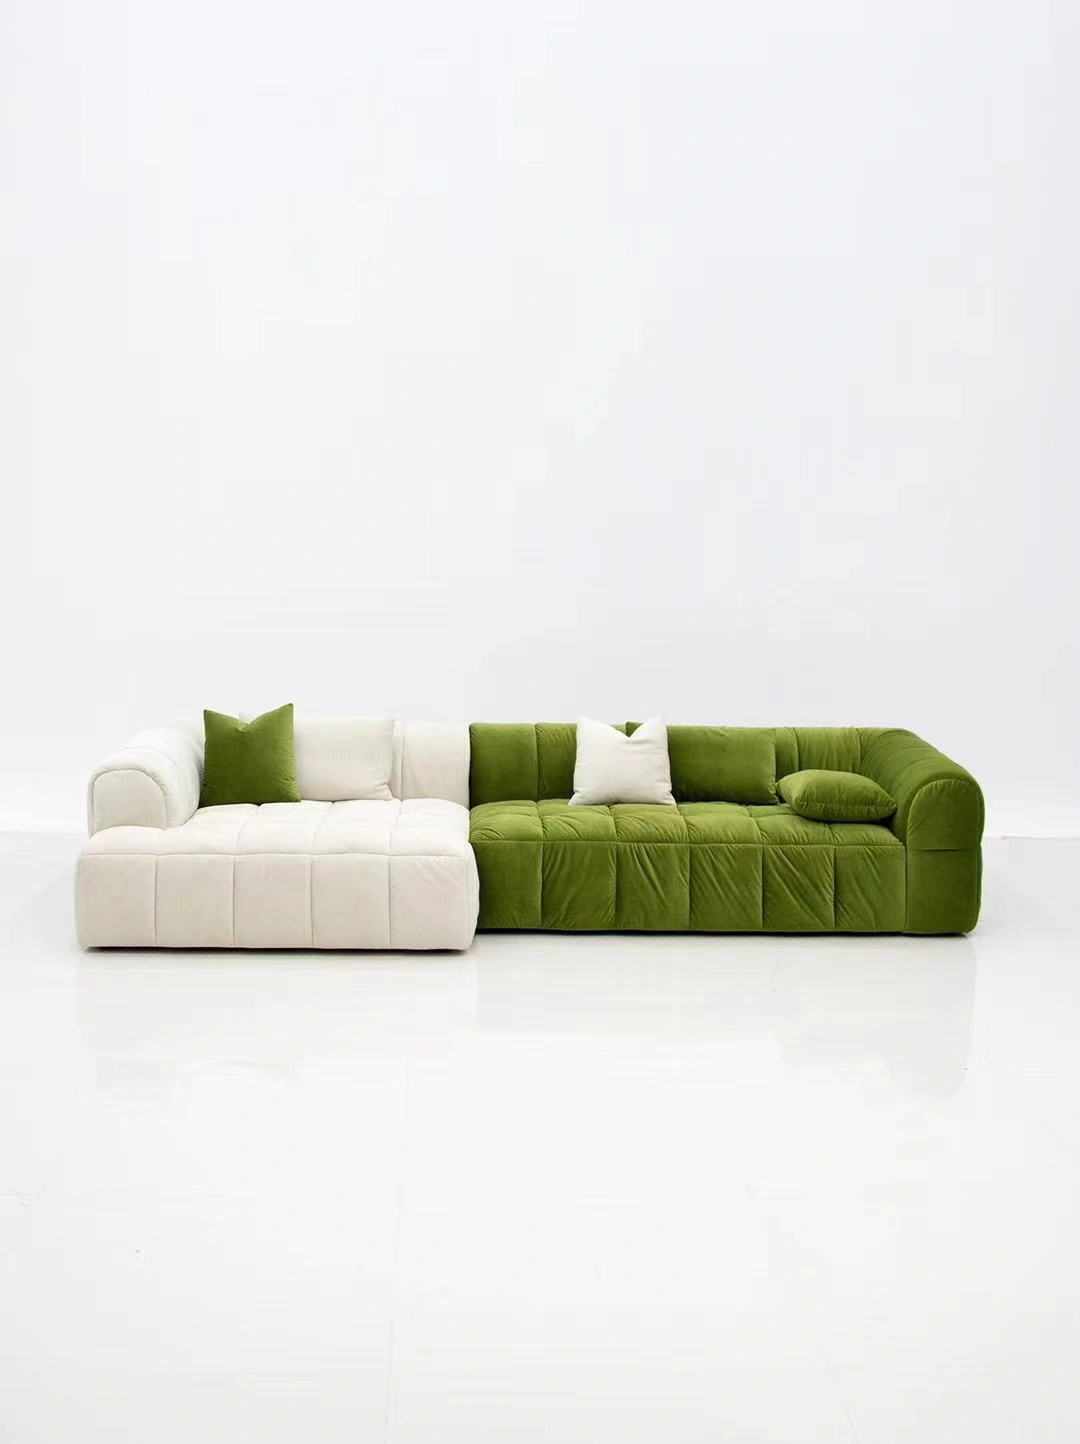 这款白撞绿的沙发是你喜欢哪一款吗